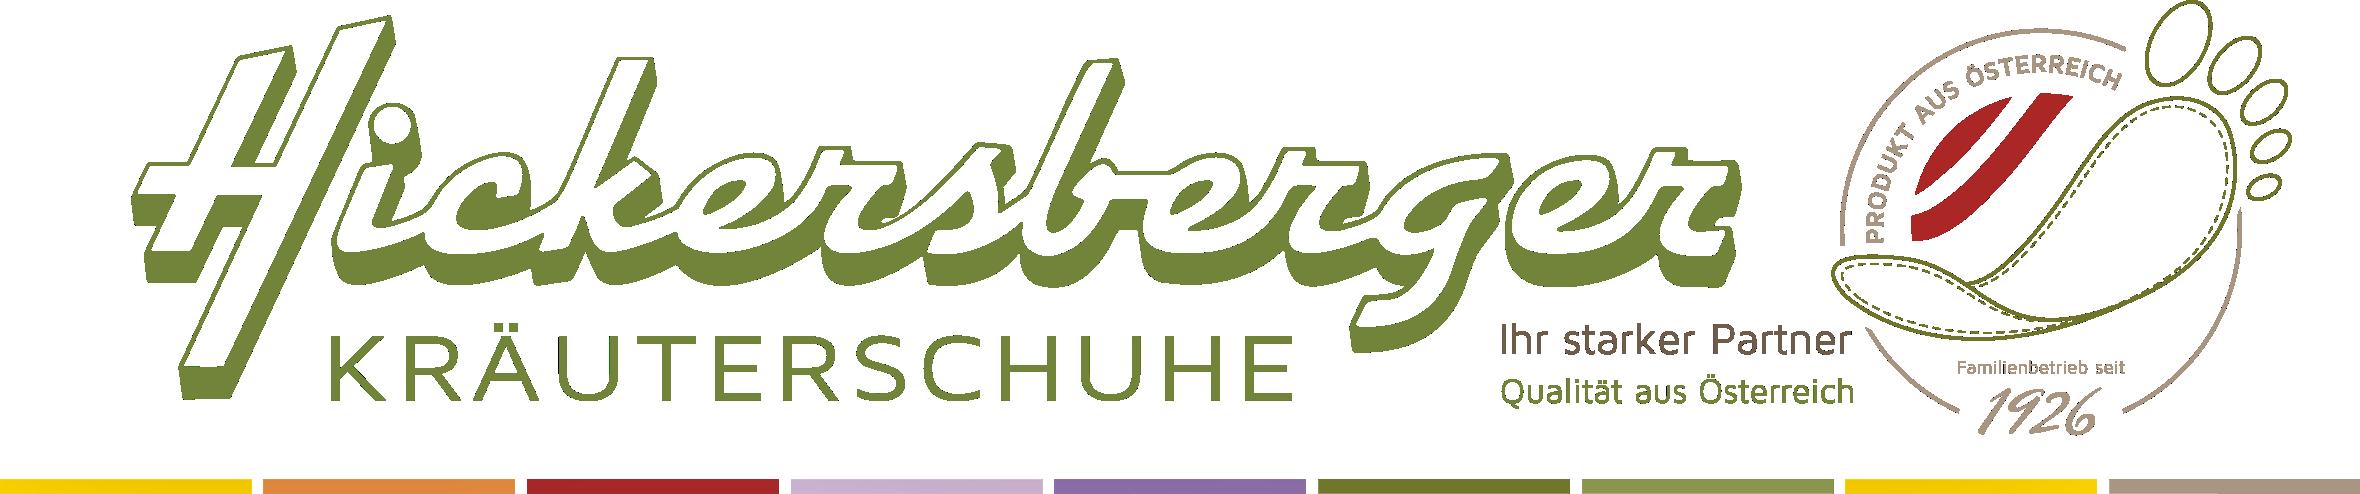 Schuhfabrik A. Hickersberger GmbH   Co KG Logo